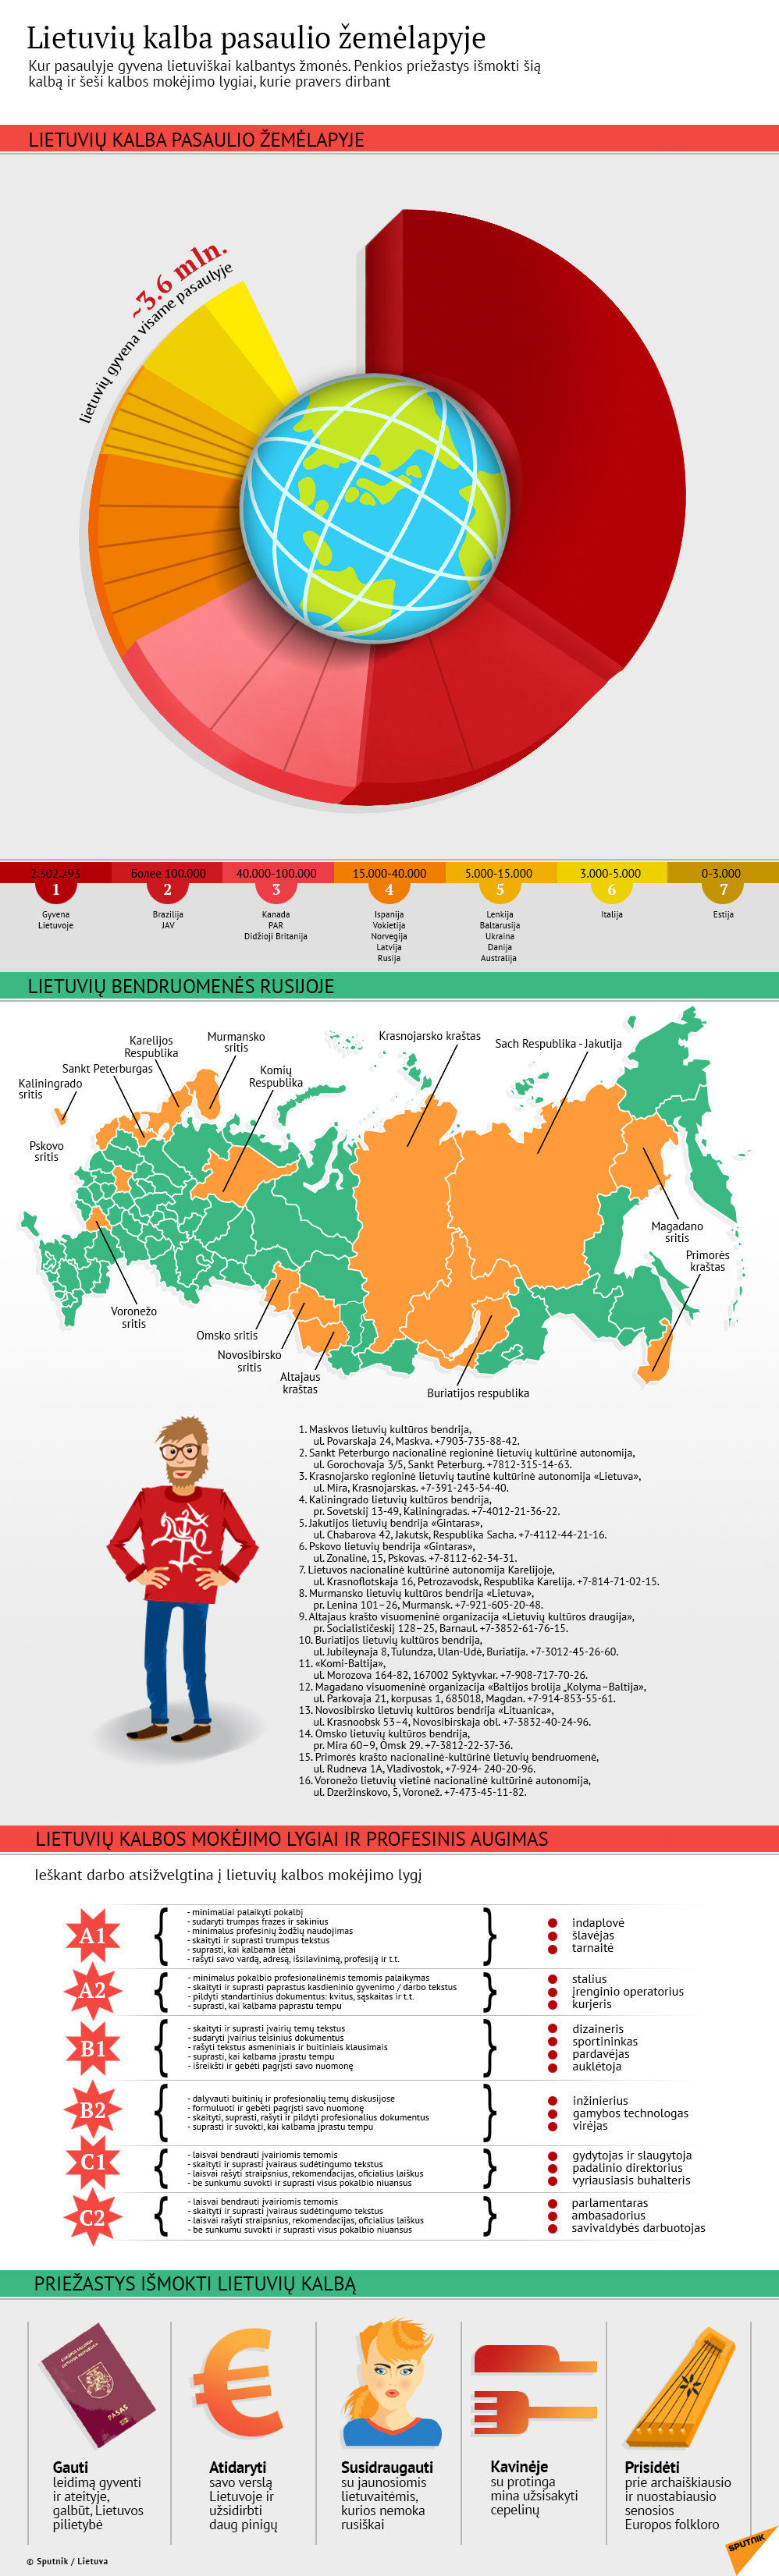 Lietuvių kalba pasaulio žemėlapyje - Sputnik Lietuva